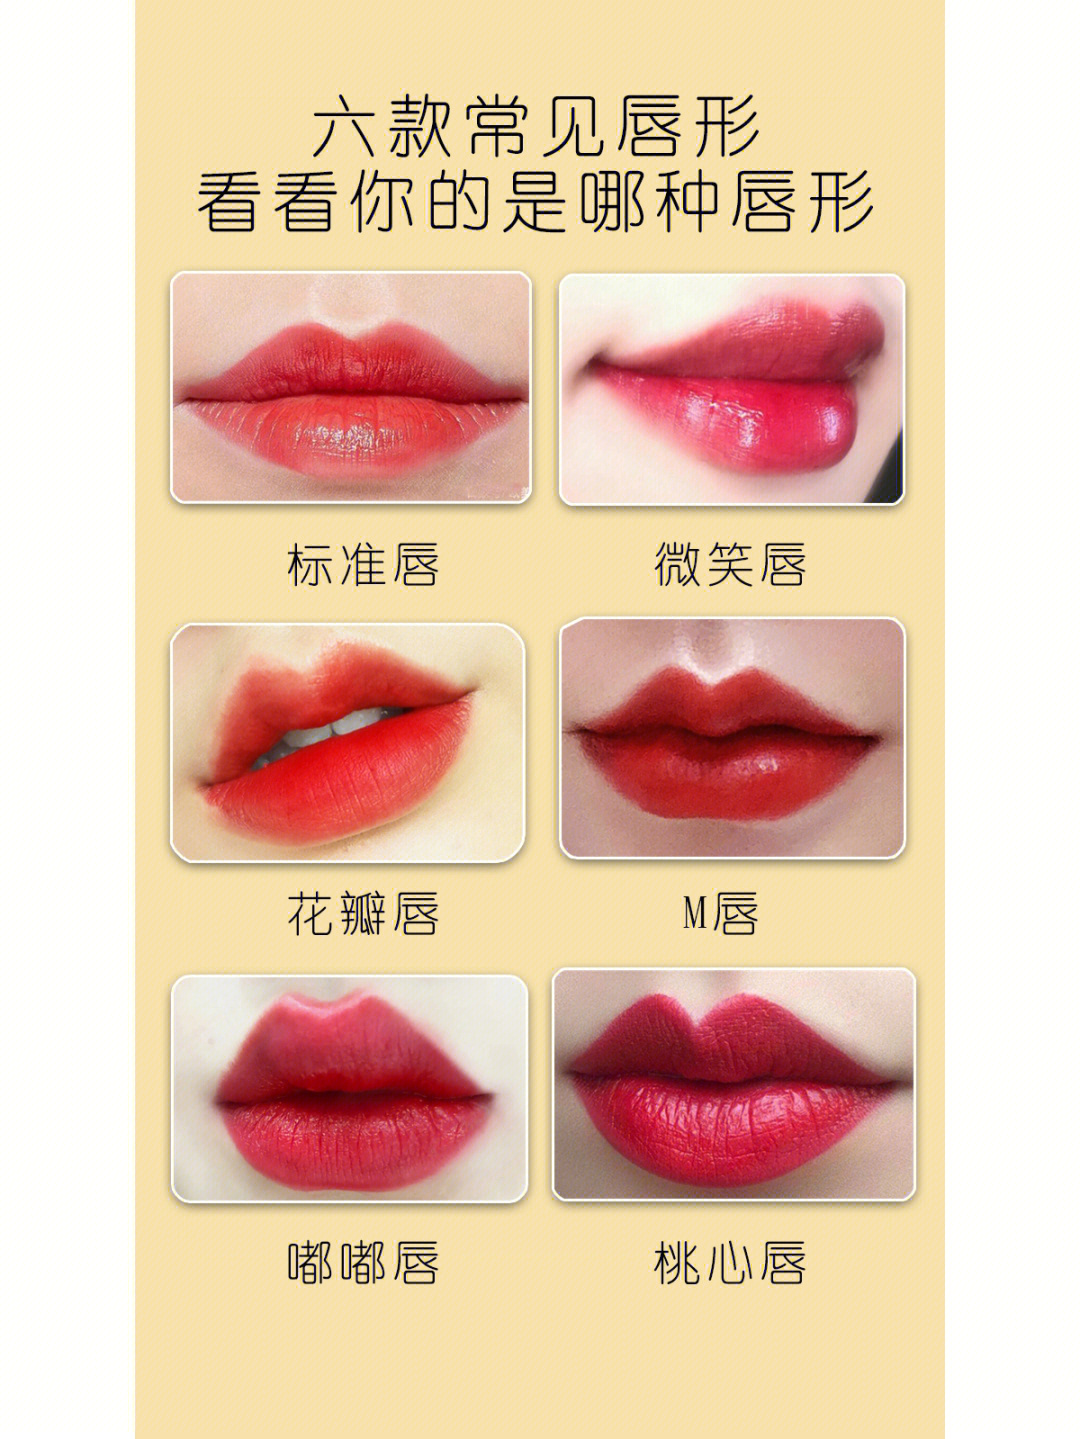 六种常见唇形分类看看你属于那种唇形